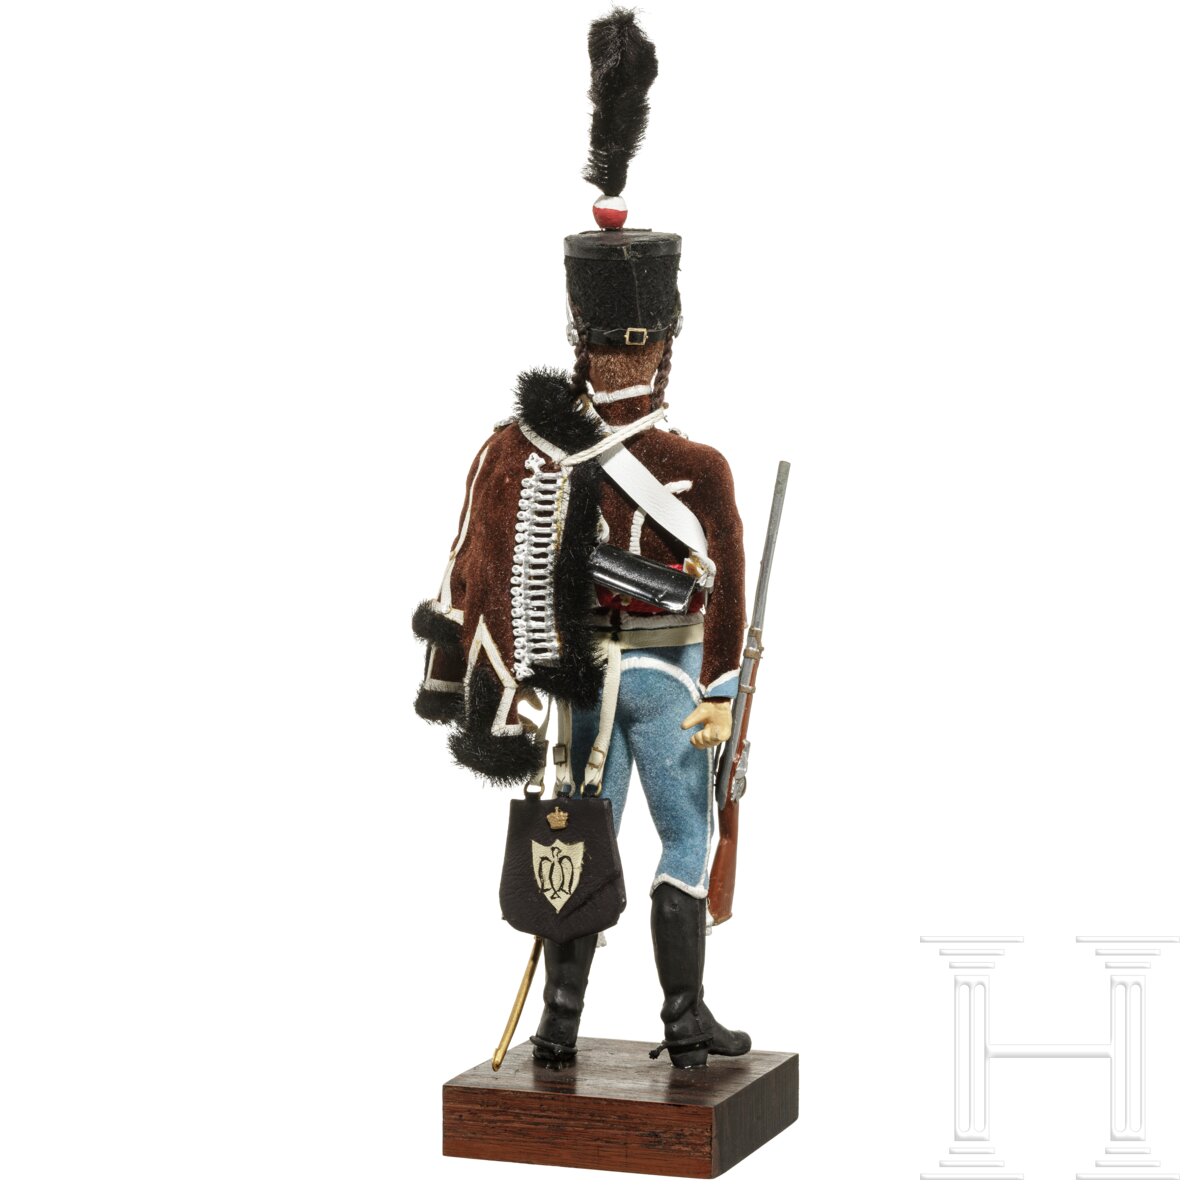 Husar um 1808 - Uniformfigur von Marcel Riffet, 20. Jhdt. - Image 4 of 6